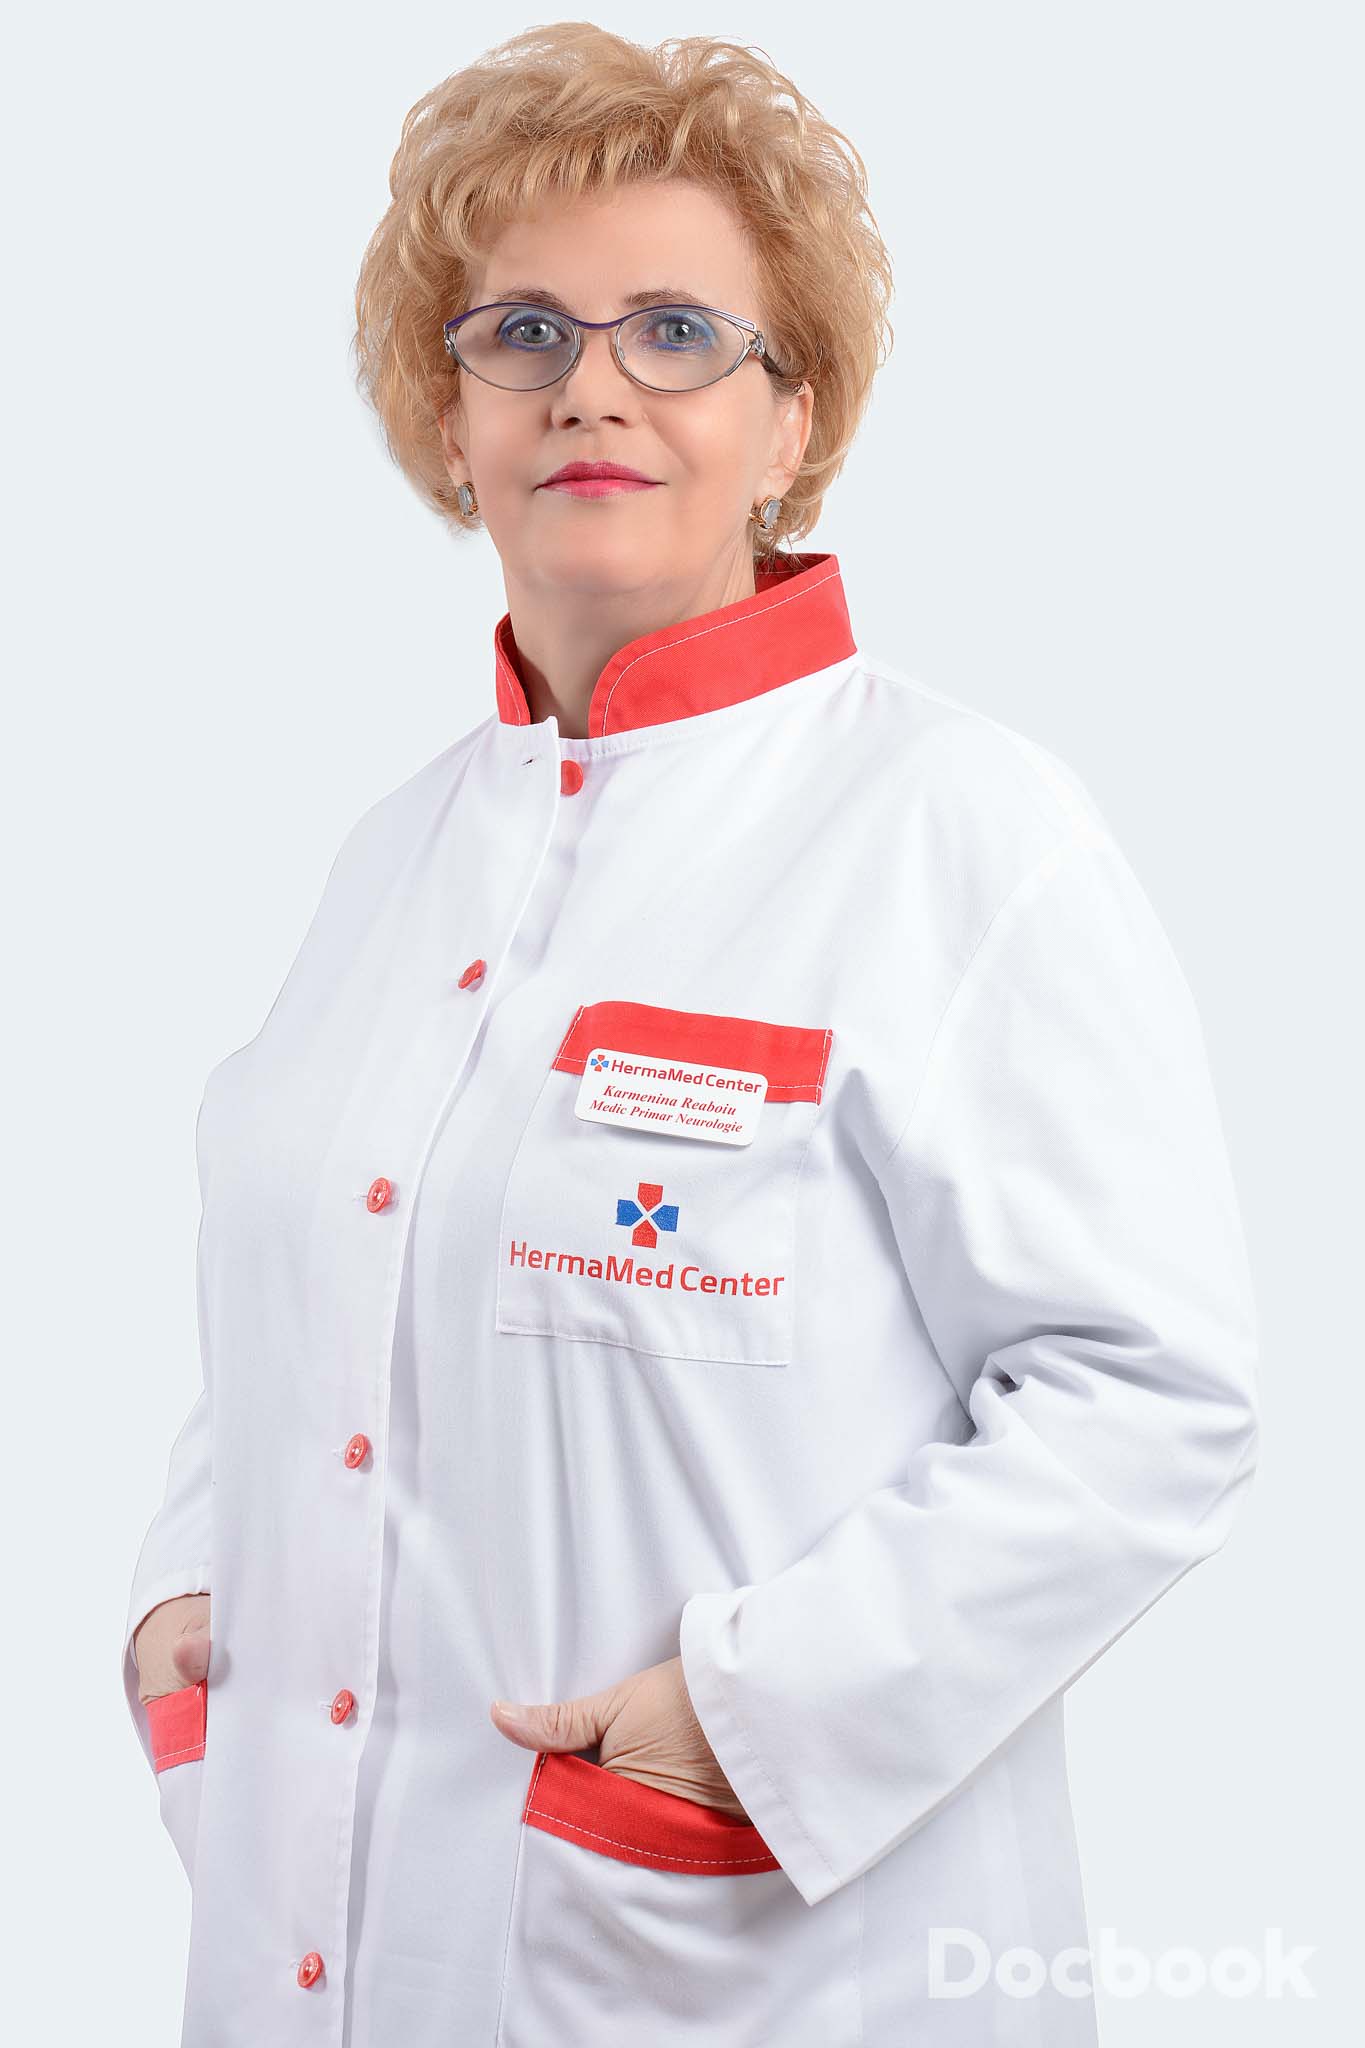 Dr. Karmenina Reaboiu